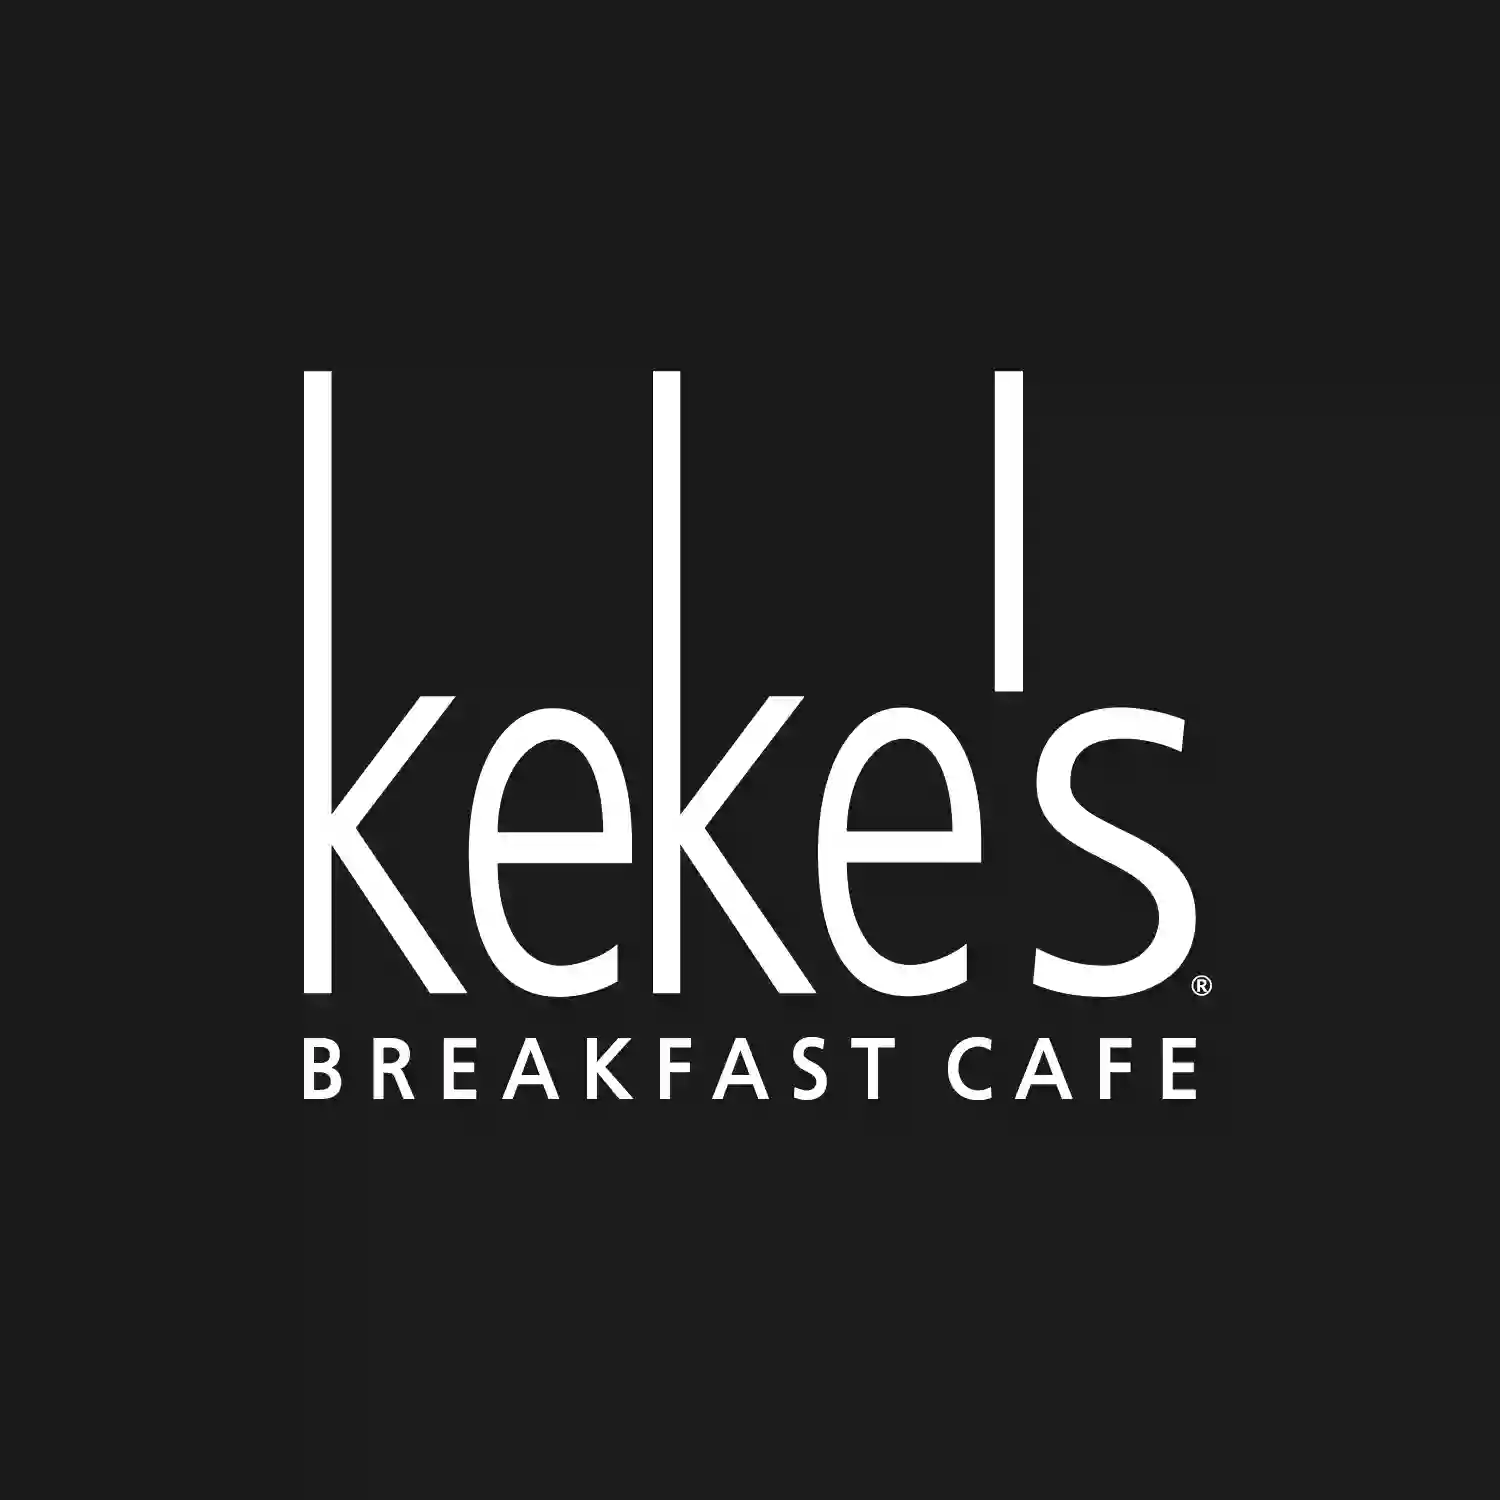 Keke's Breakfast Café